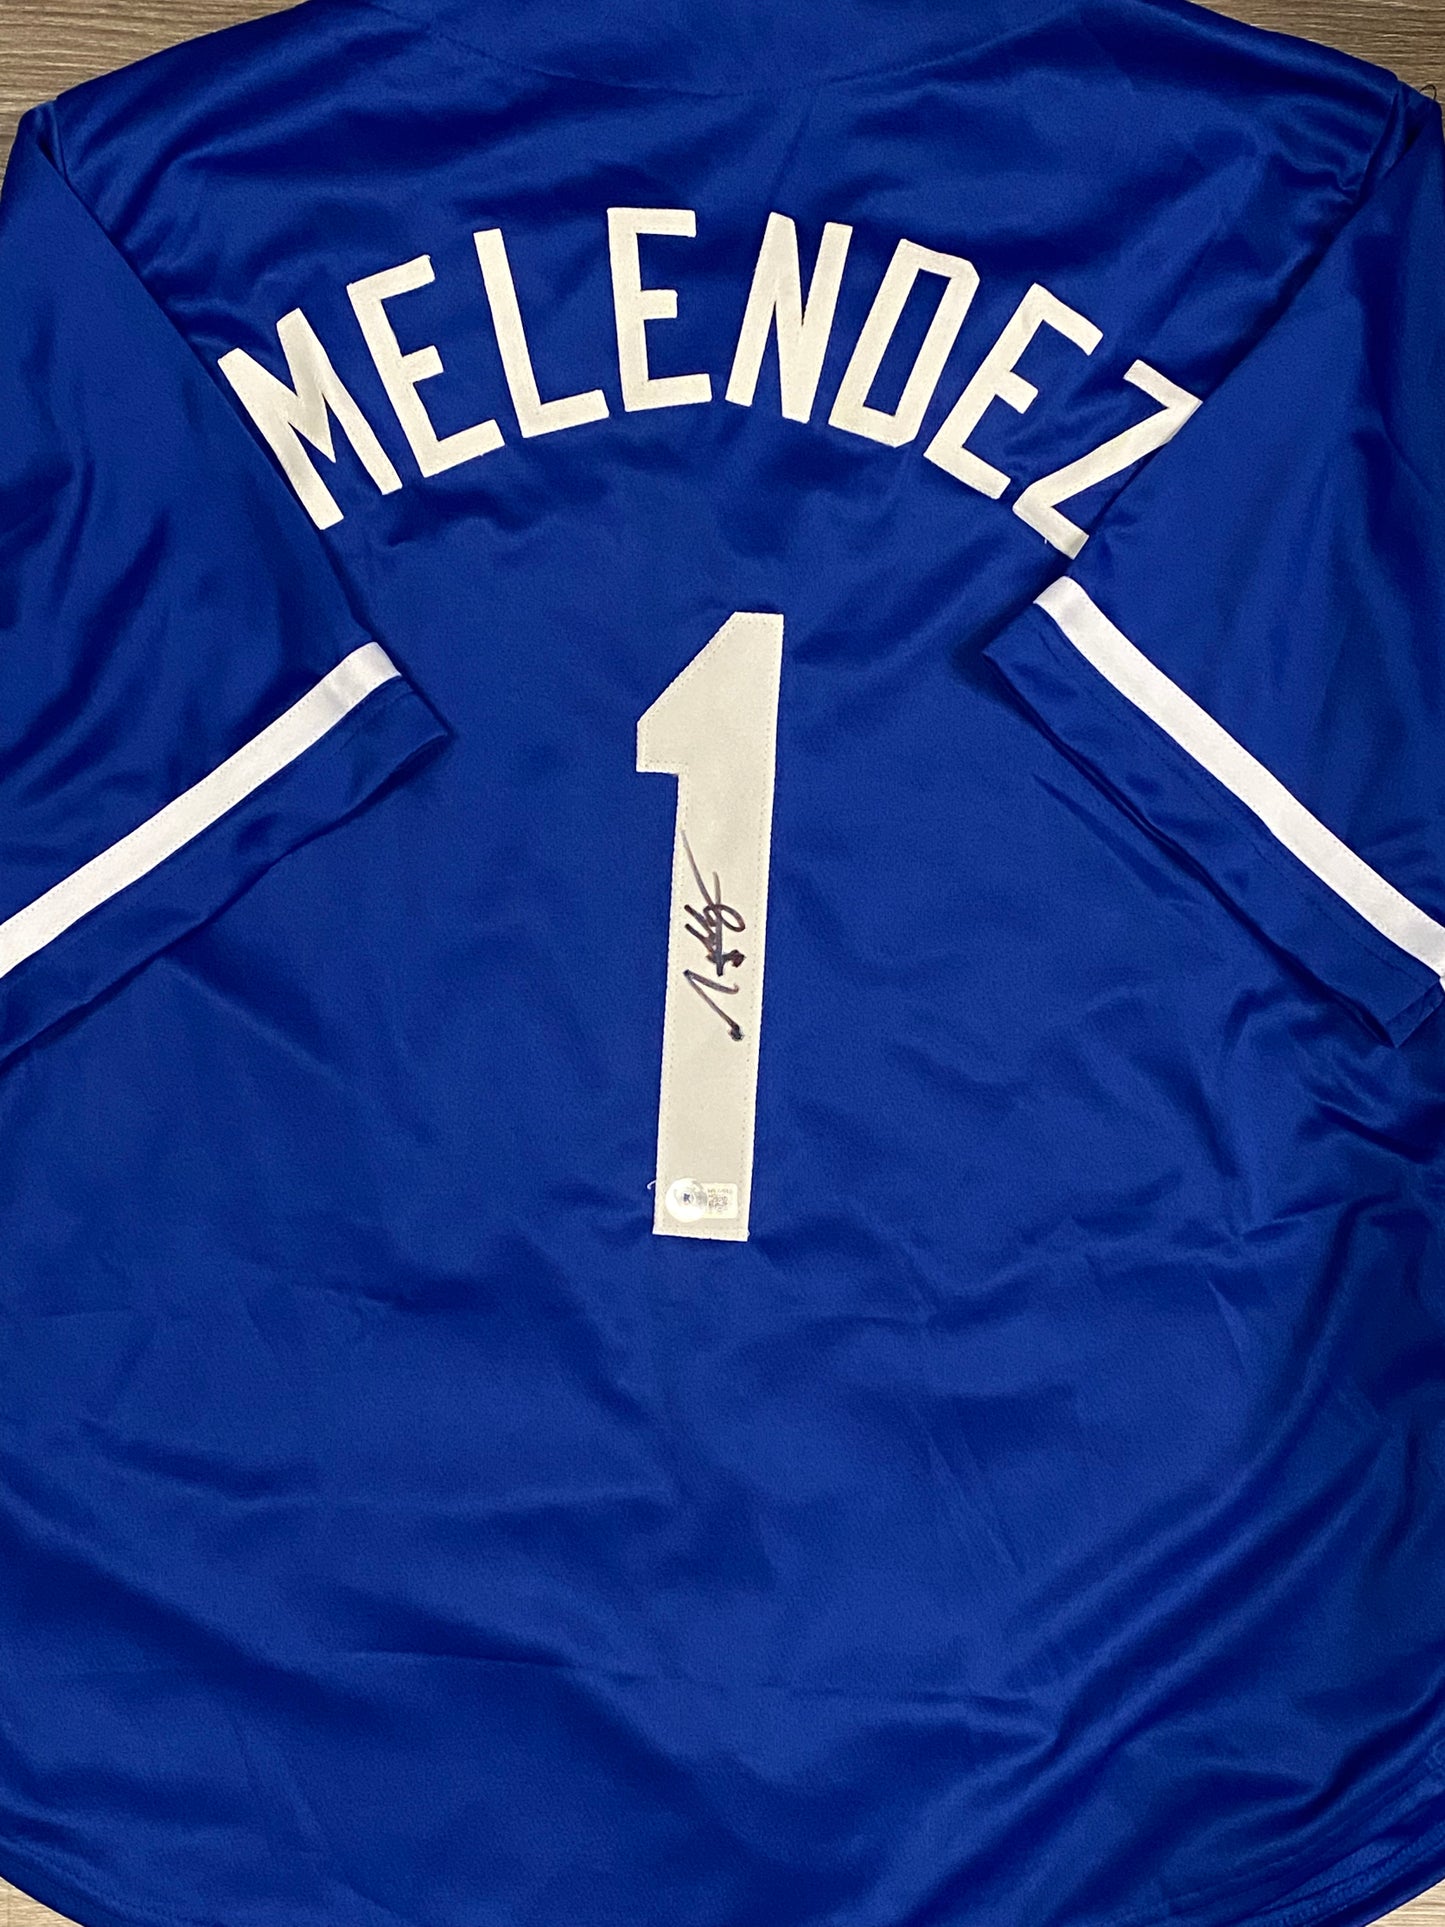 MJ Melendez signed custom jersey (BECKETT COA)